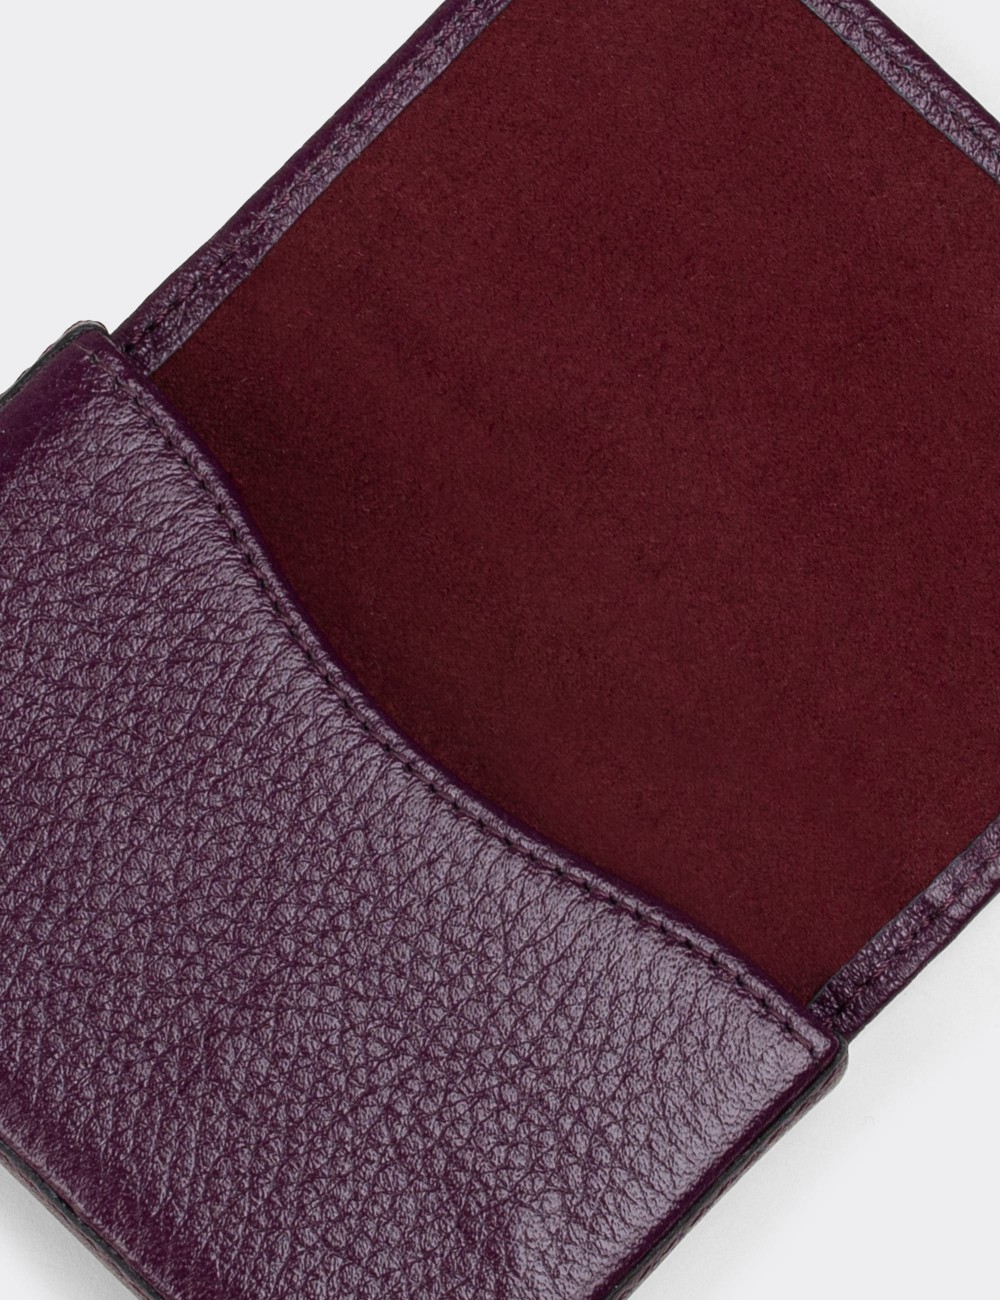  Leather Damson Men's Wallet - 00522MMRDZ01